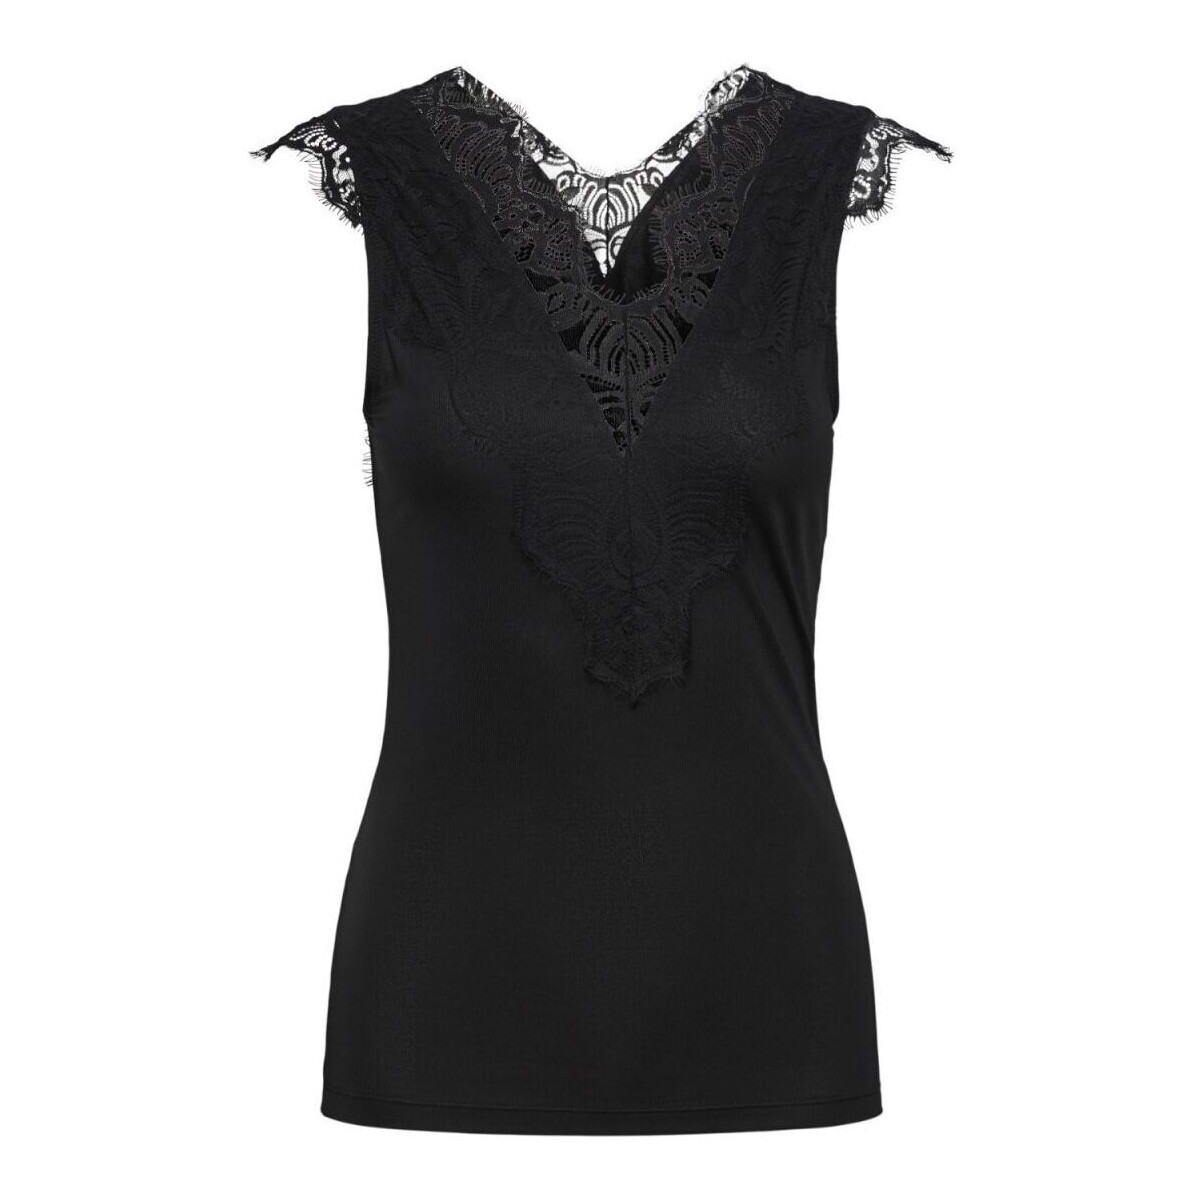 Vêtements Femme Débardeurs / T-shirts sans manche Pieces 17101014 ILU-BLACK Noir